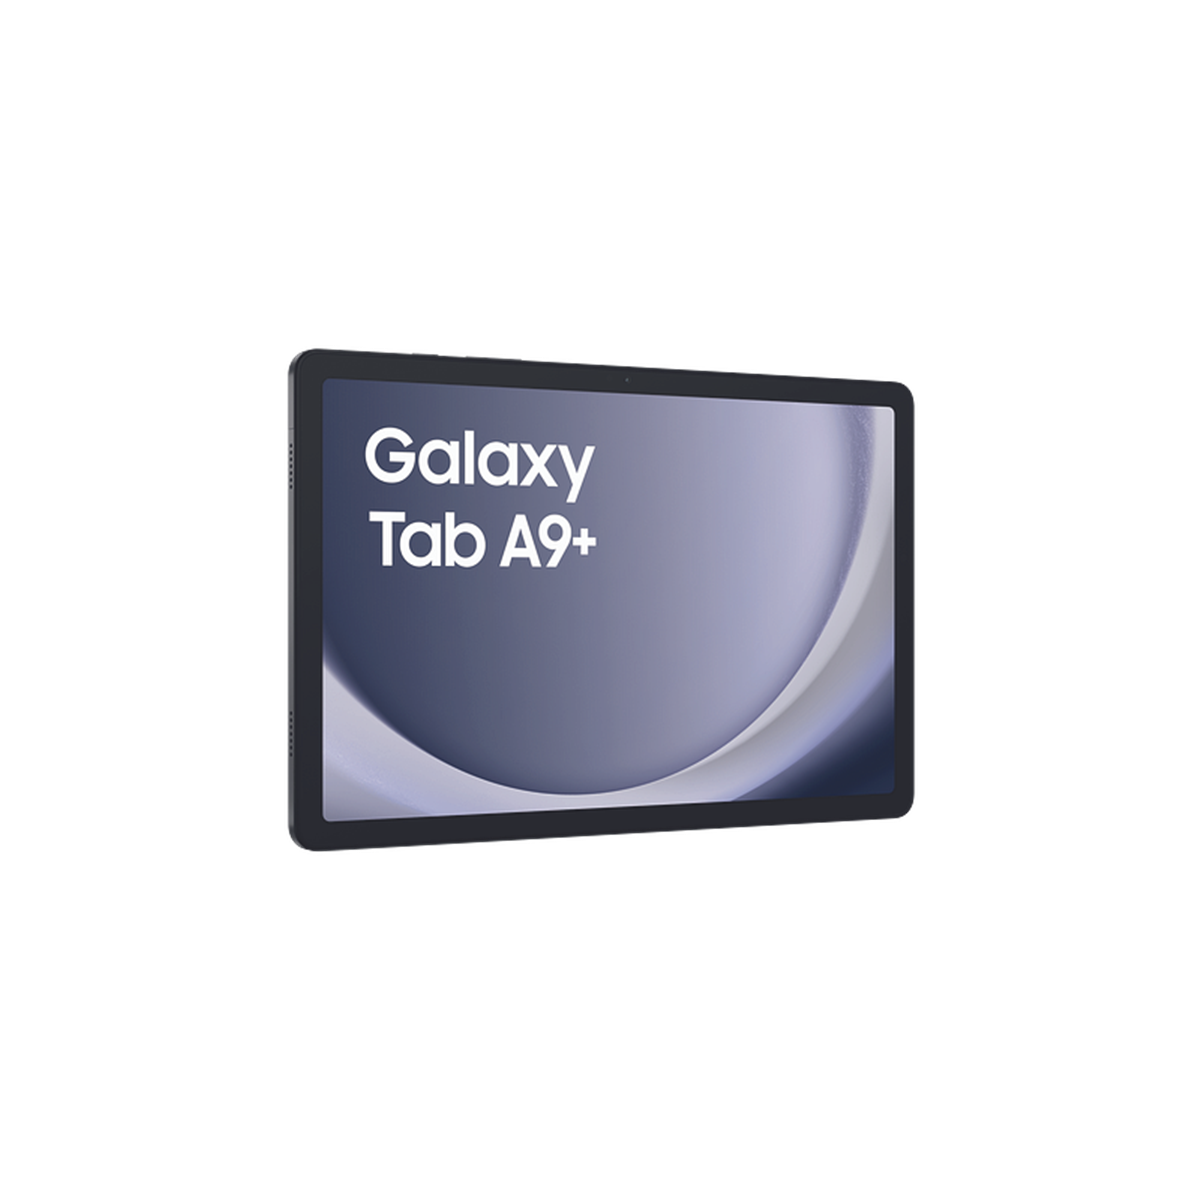 Samsung Galaxy Tab A 64 GB - Tablet